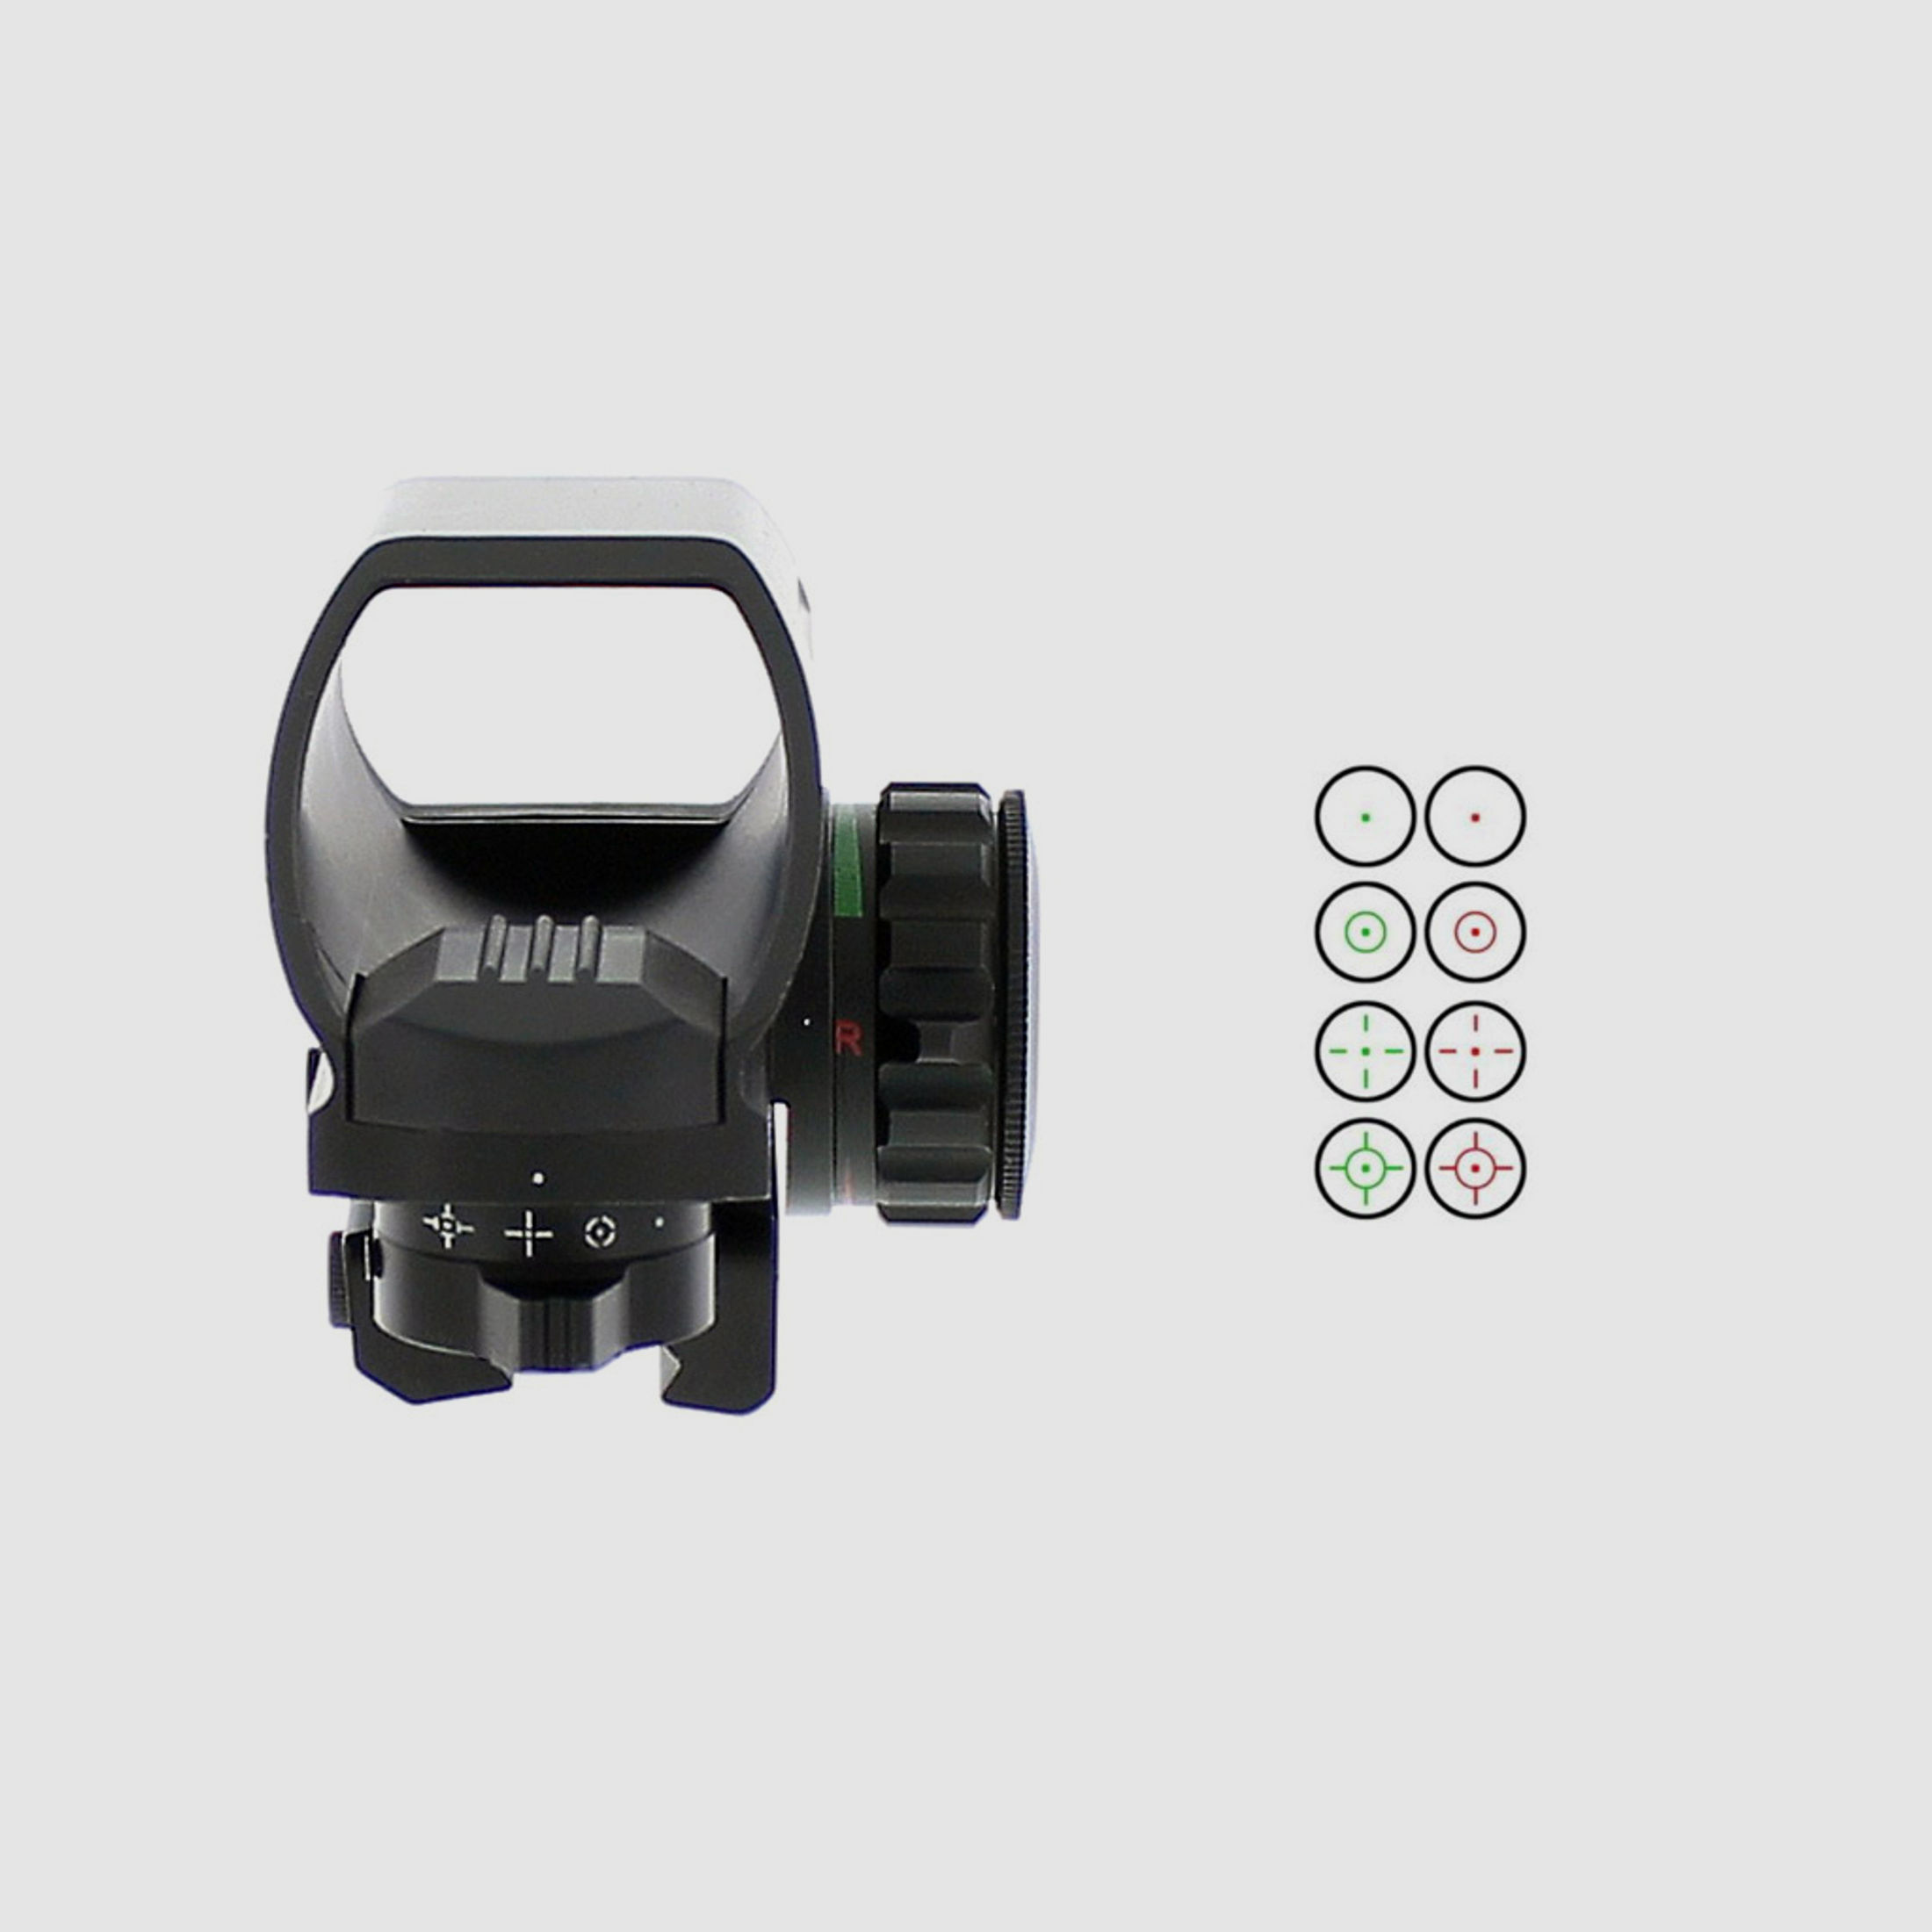 Leuchtpunktvisier Ares Arms Red Green Dot, 4 wĂ¤hlbare Absehen, stufenlose Helligkeitsregulierung, fĂĽr 11 mm Prismenschiene